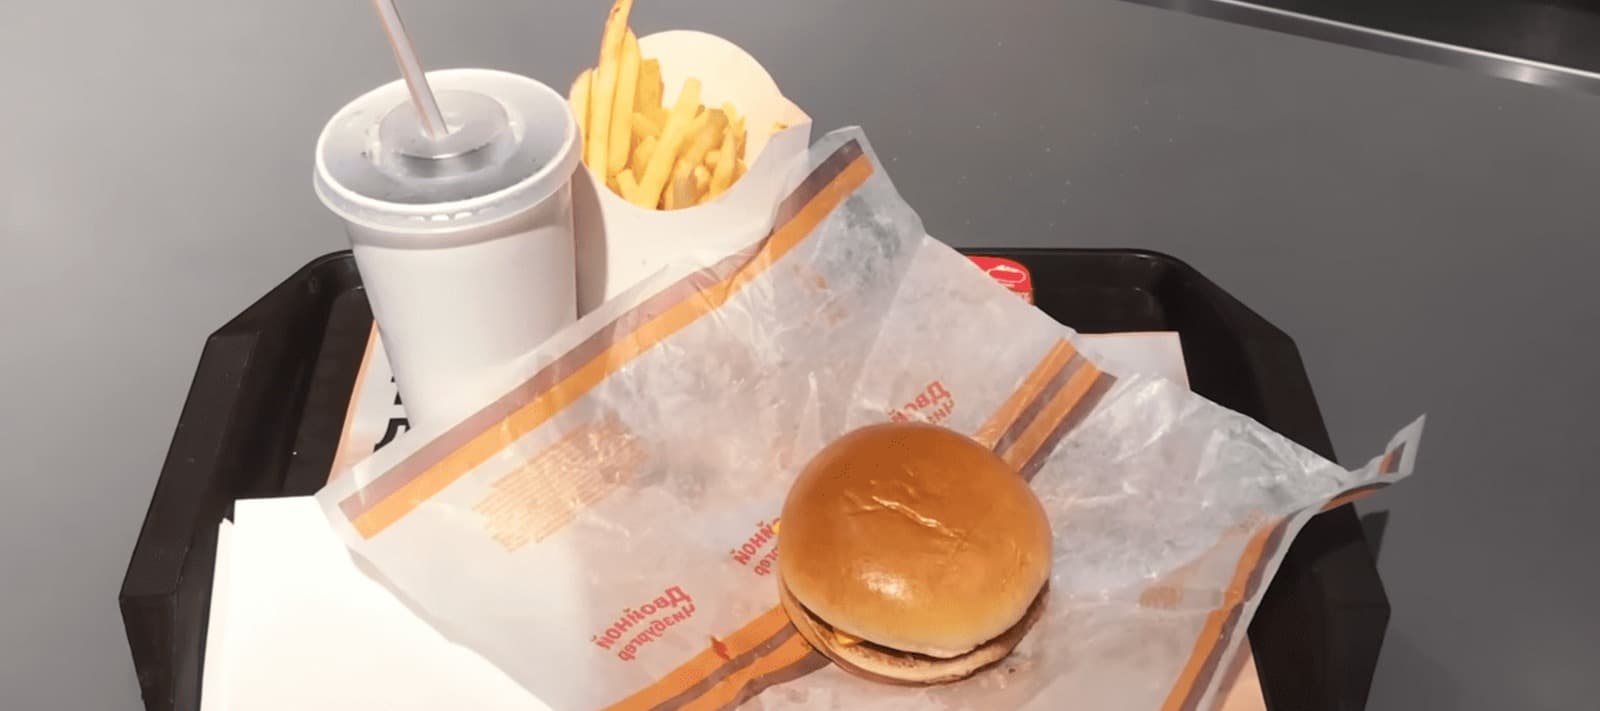 Фото новости: "«Вкусно — и точка» обошла KFC по популярности среди россиян"